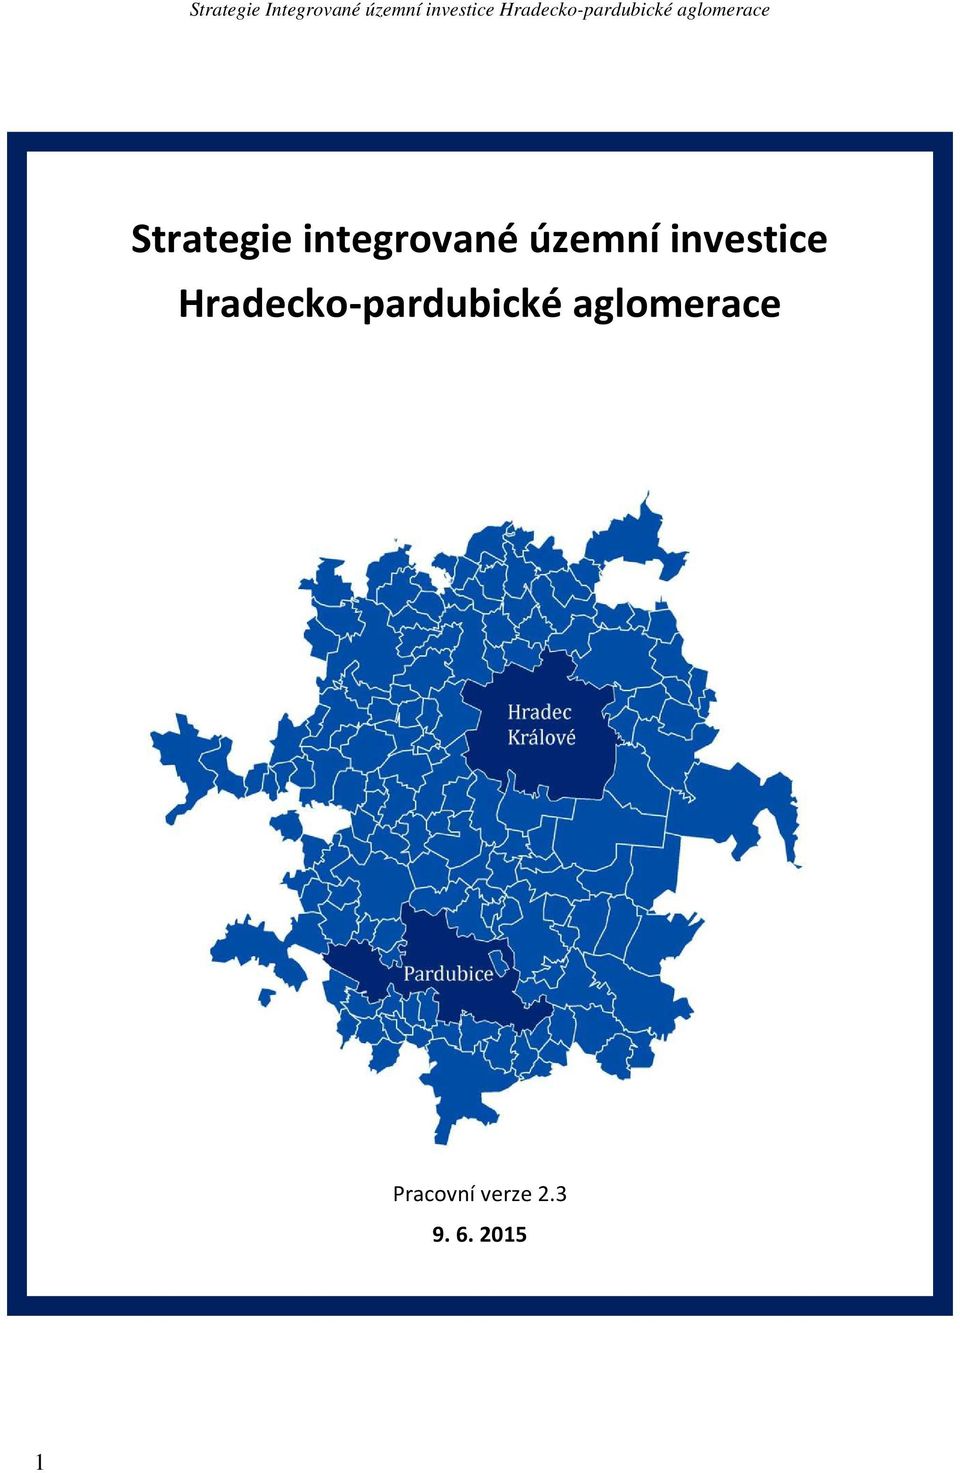 Hradecko-pardubické